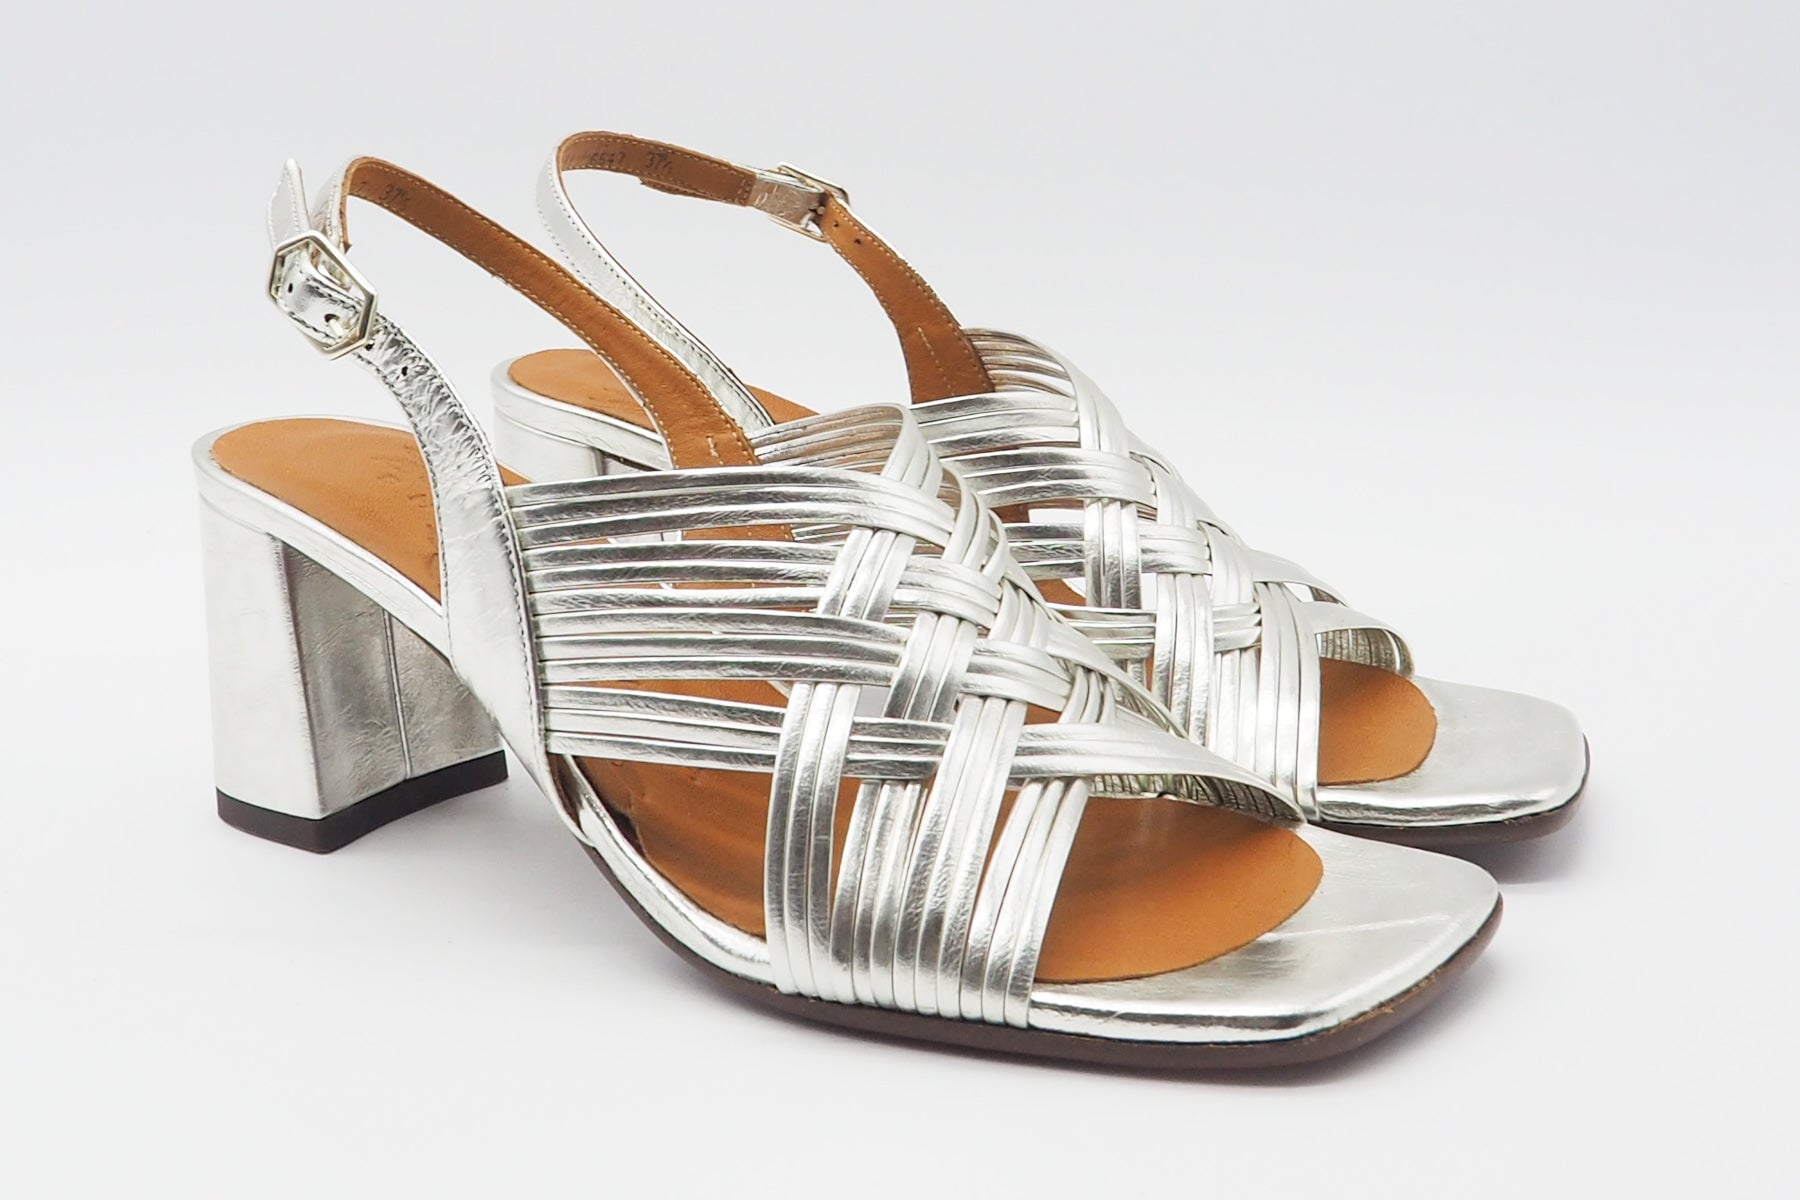 Edle Damen Absatz-Sandale aus Metallicleder in Silber - Absatz 6cm - Lubeya Damen Sandalen Chie Mihara 